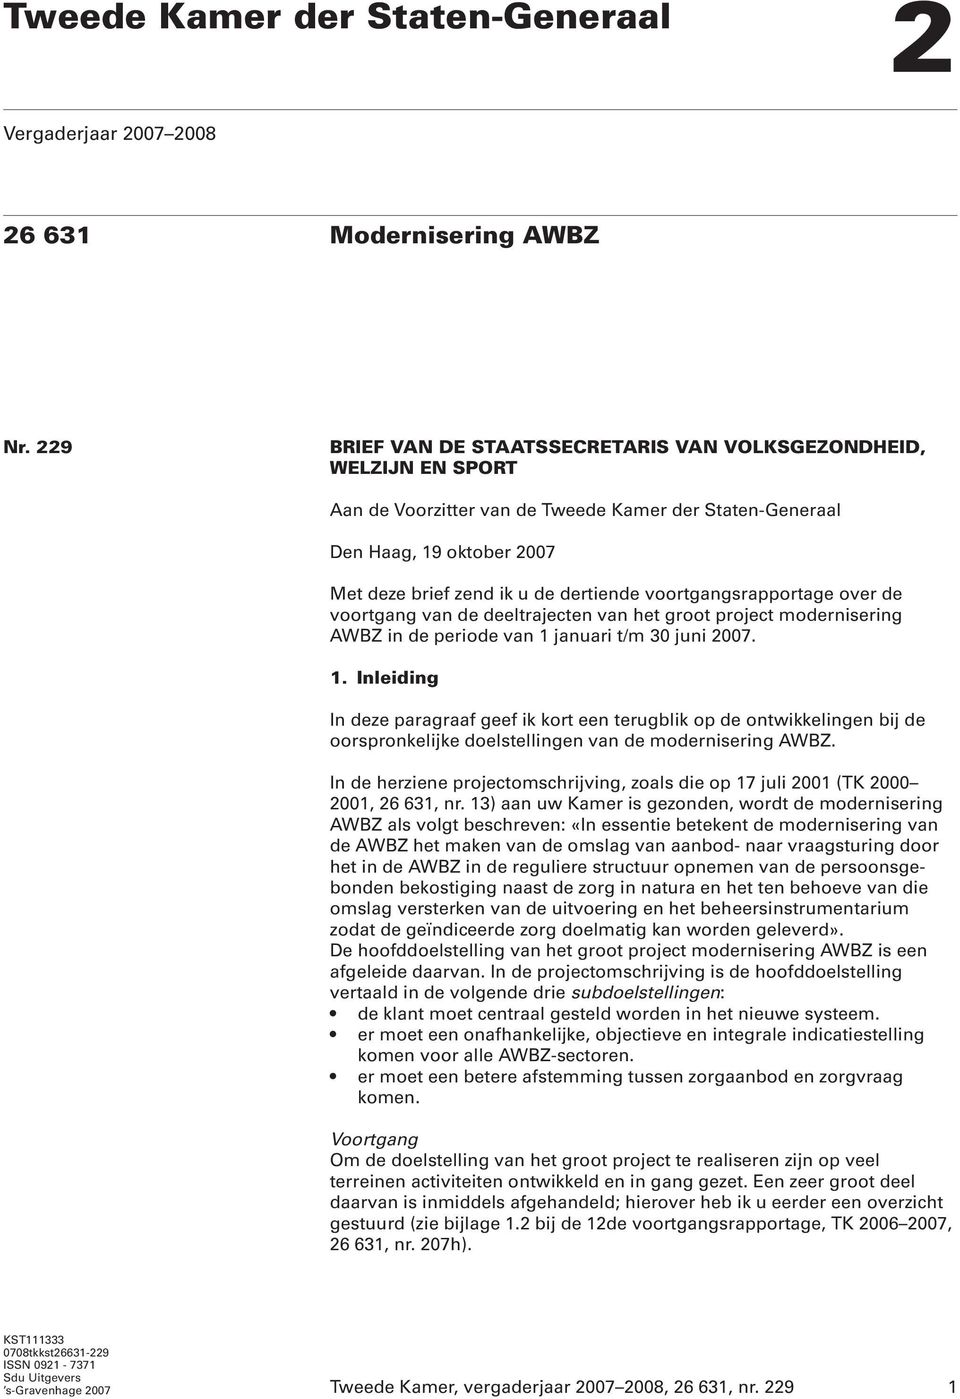 voortgangsrapportage over de voortgang van de deeltrajecten van het groot project modernisering AWBZ in de periode van 1 